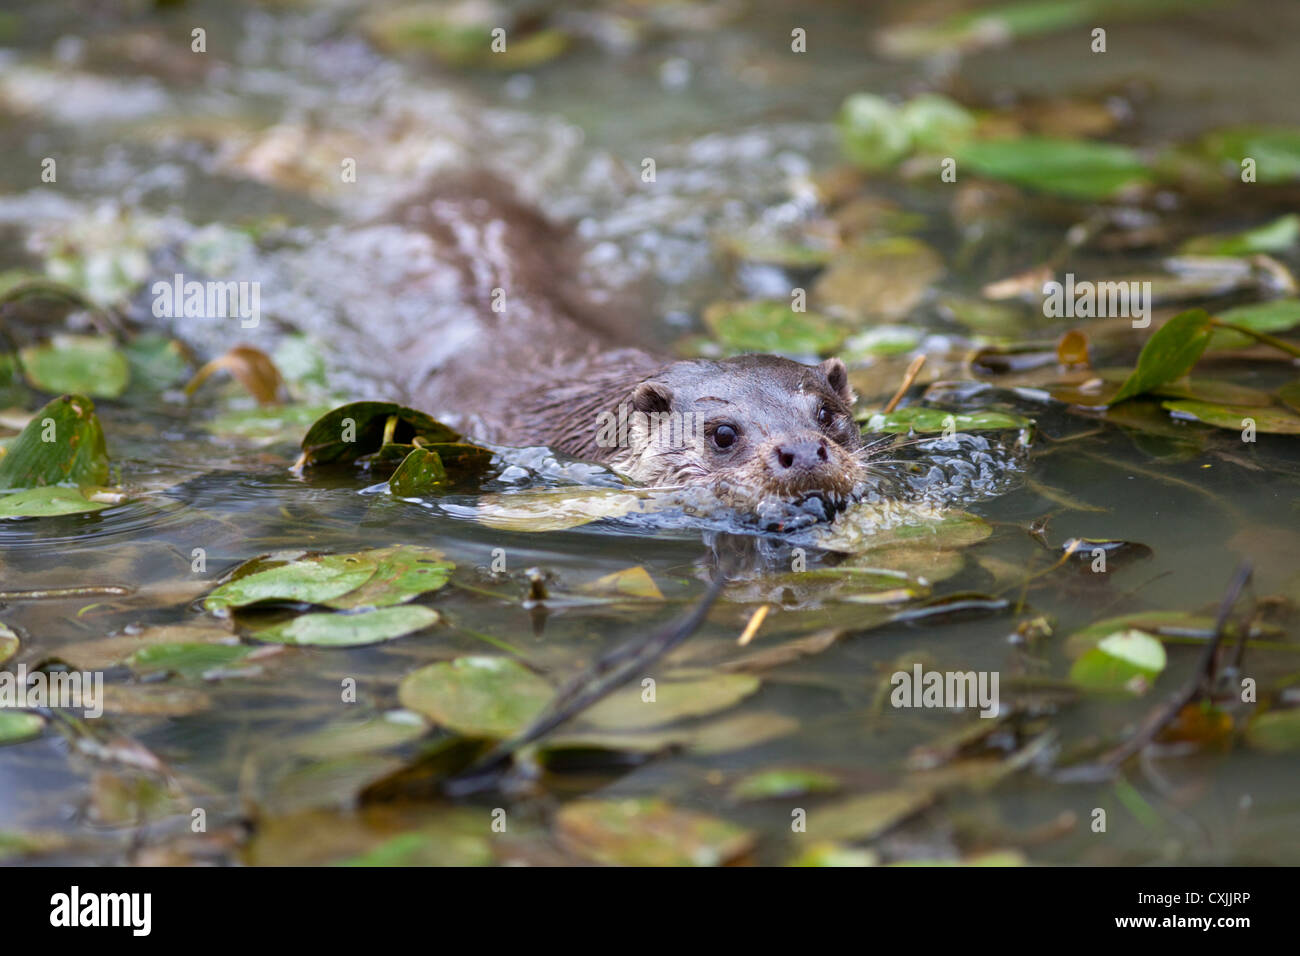 Eurasian Otter (Lutra lutra) swimming, UK Stock Photo